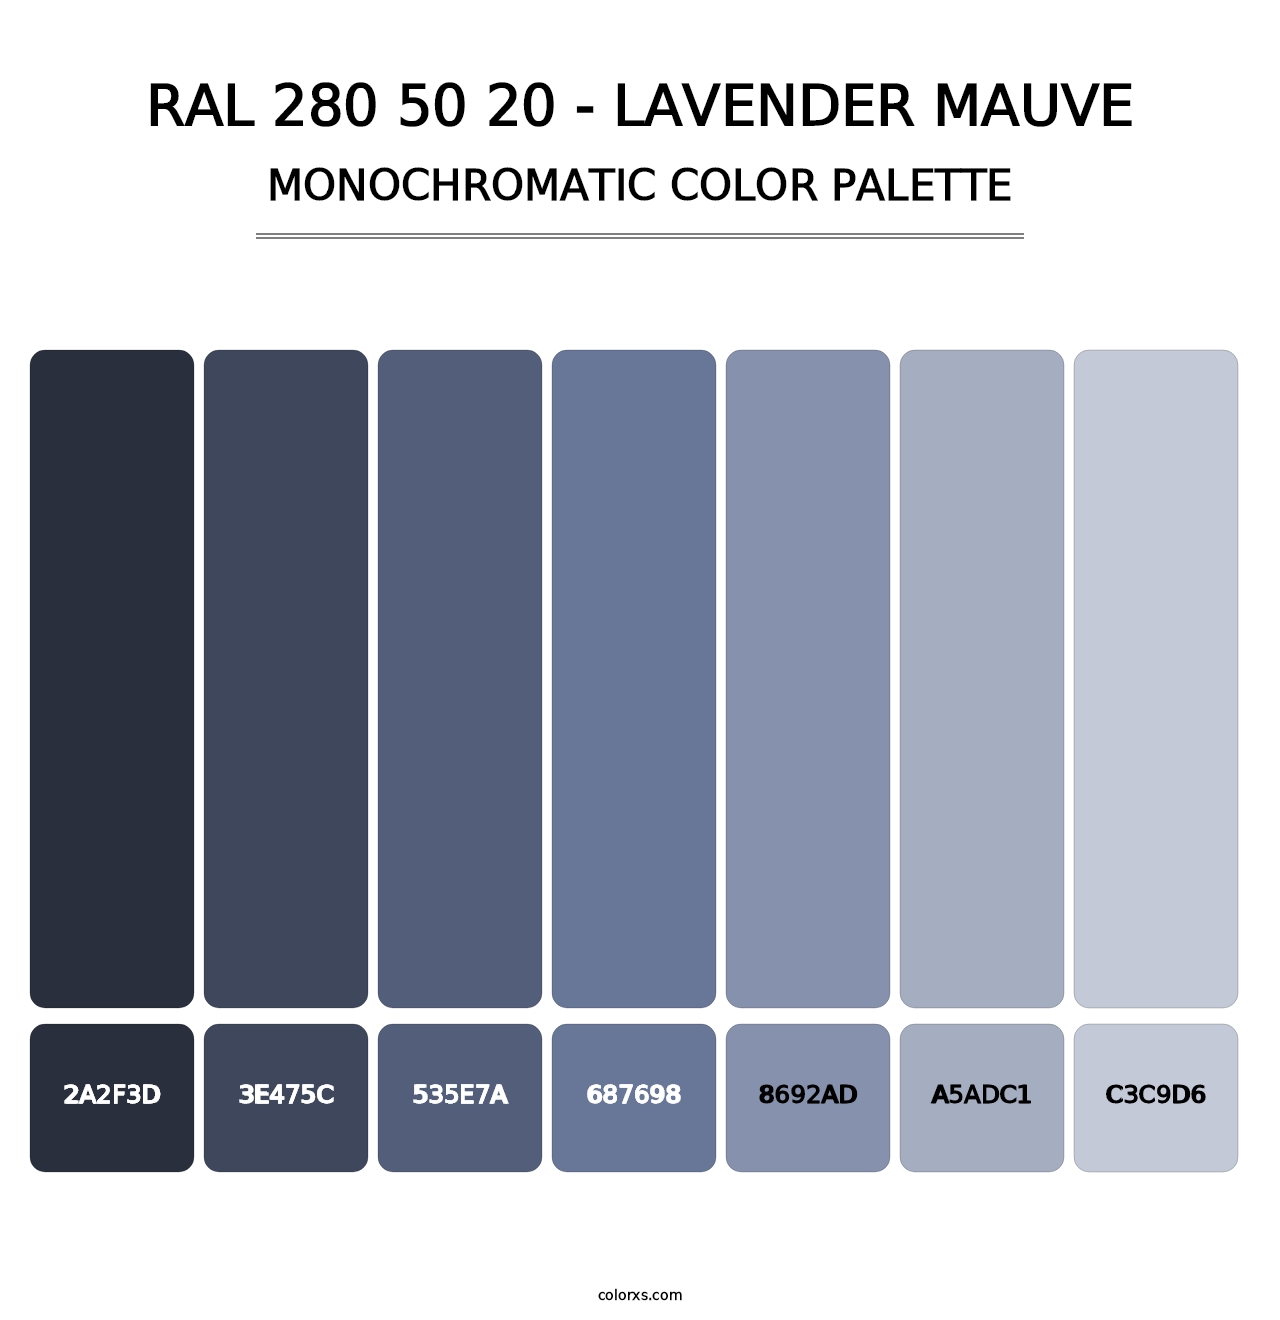 RAL 280 50 20 - Lavender Mauve - Monochromatic Color Palette